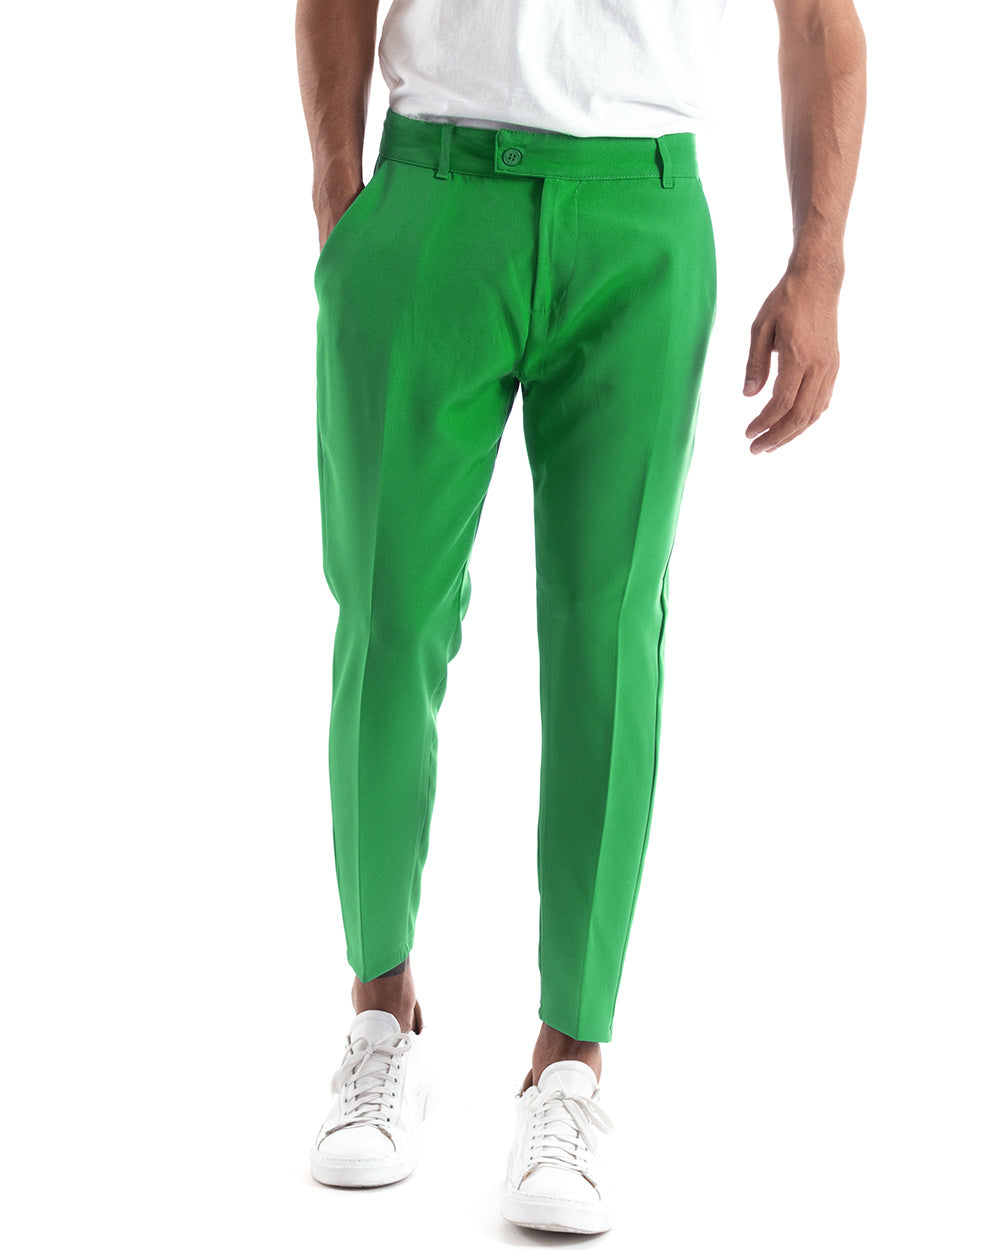 Abito Uomo Monopetto Vestito Viscosa Completo Giacca Pantaloni Verde Menta Elegante Cerimonia GIOSAL-OU2172A